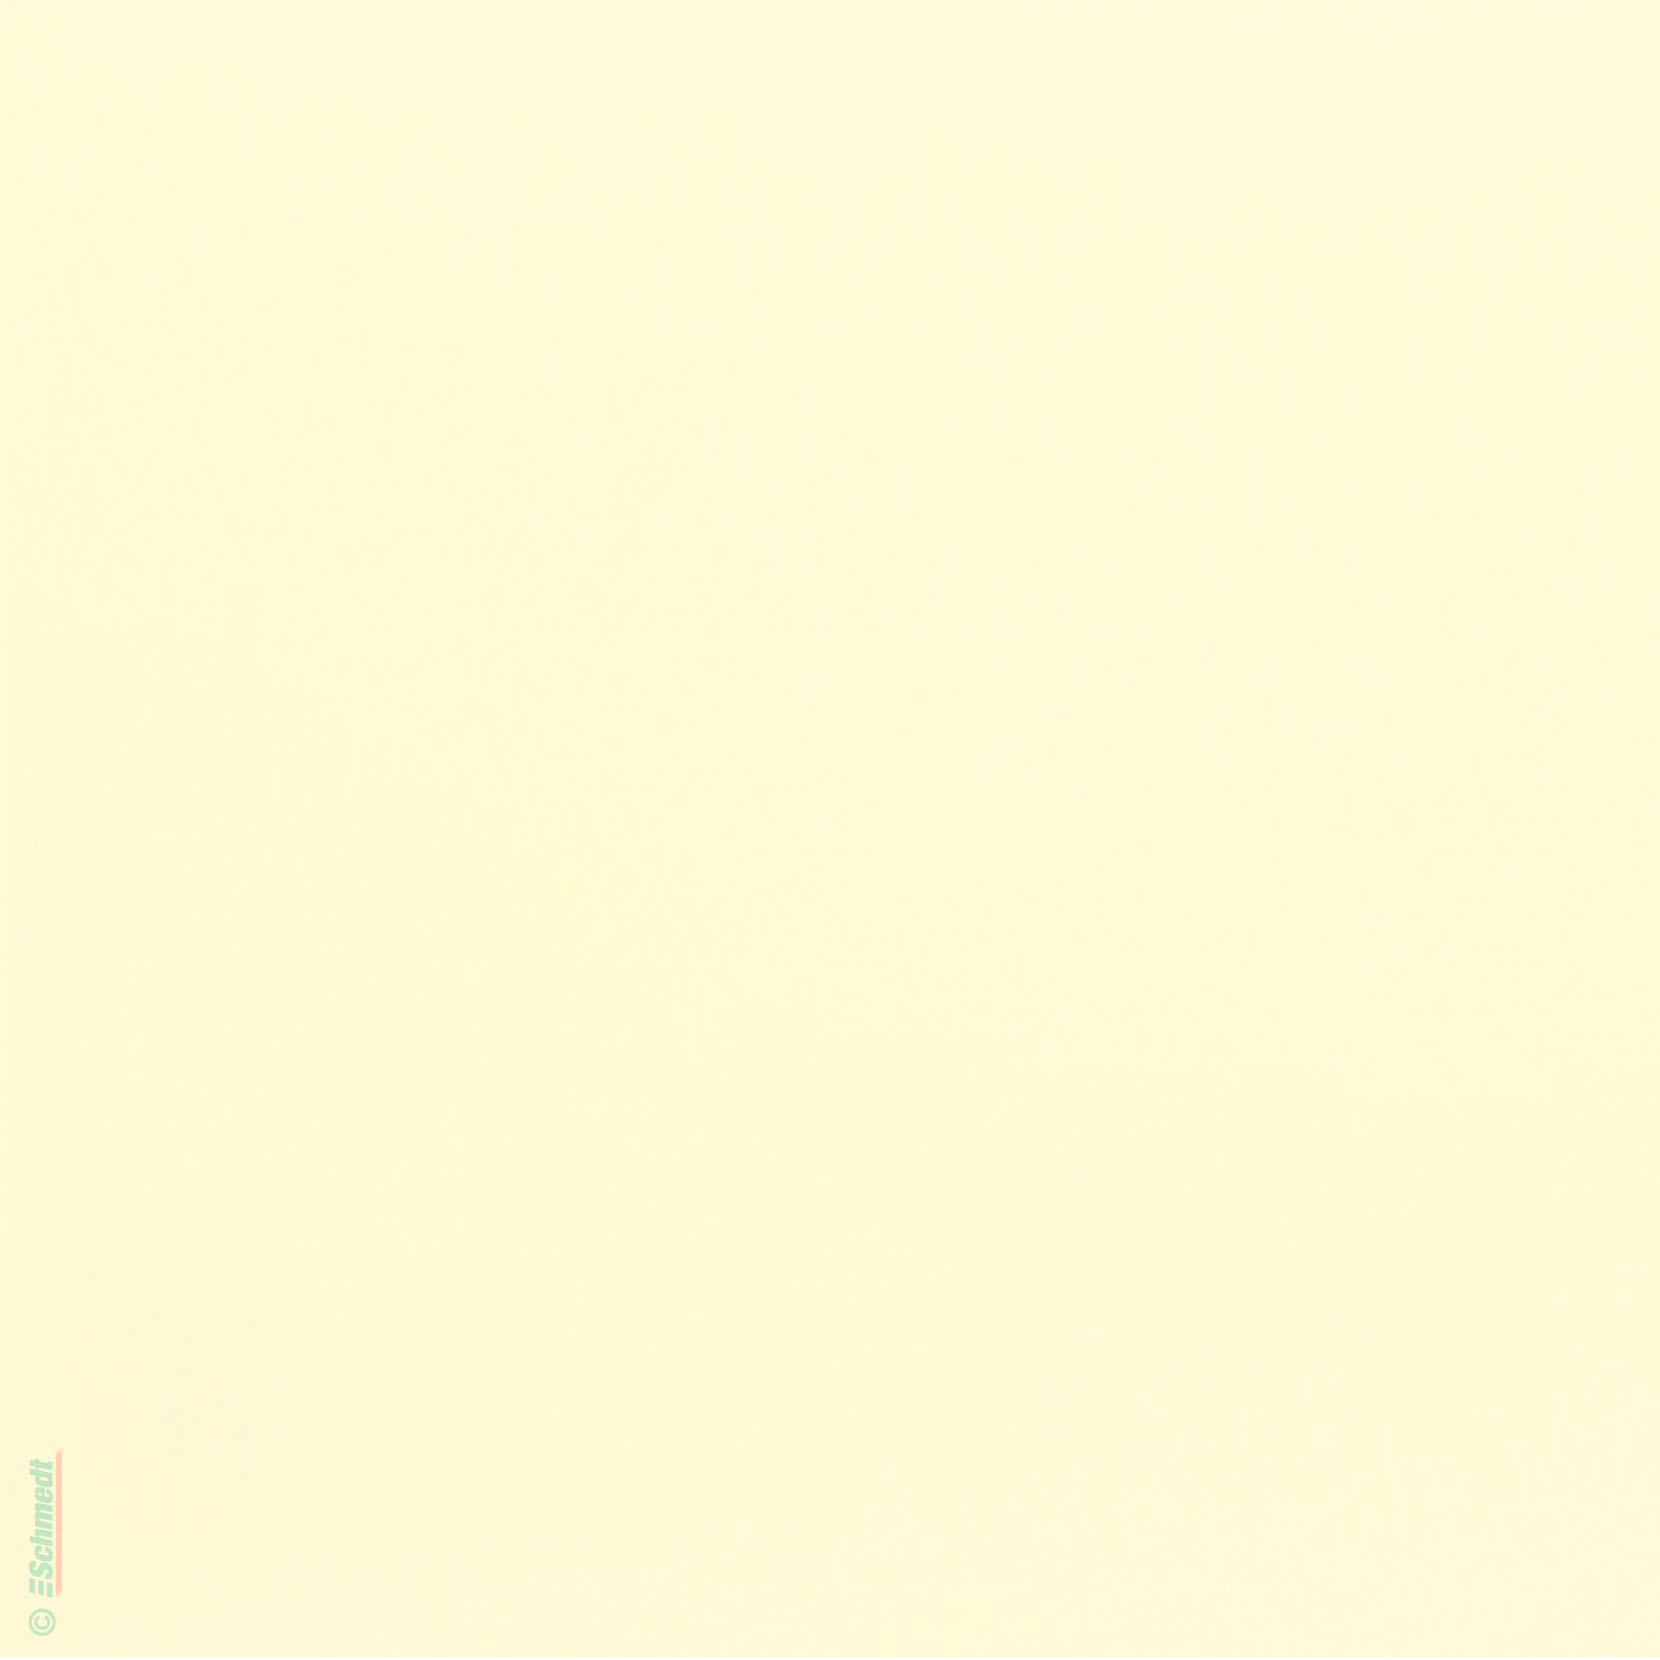 Cartón foto / paspartú - libre de ácidos - Color blanco natural - Gramaje: (en g/m²) 400 - para la producción de fotolibros y paspartús...